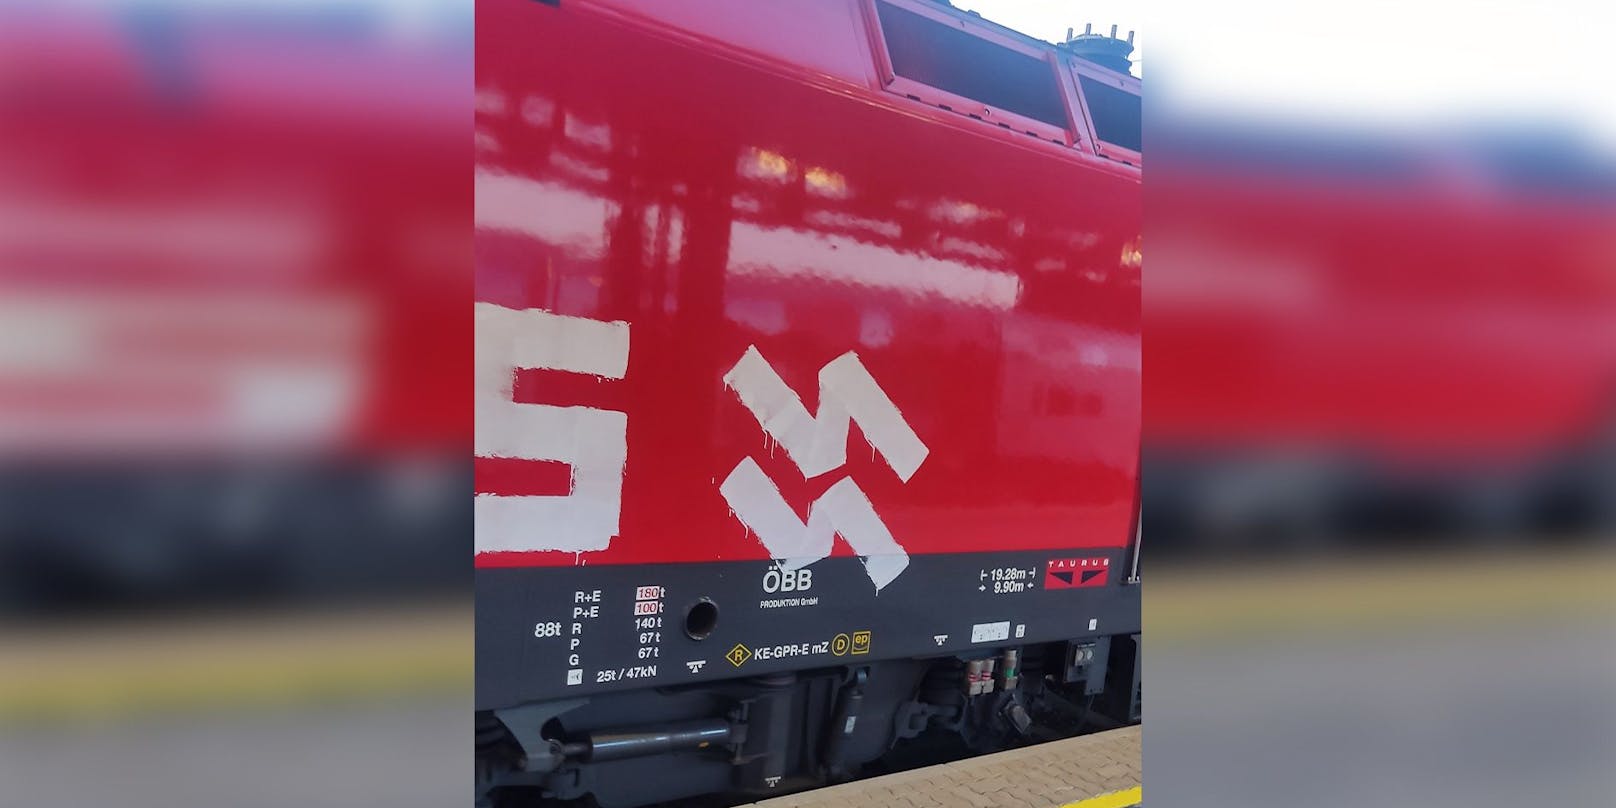 Die Lokomotive des ÖBB-Zugs nach Wien-Meidling wurde von Unbekannten mit nationalsozialistischen Symbolen beschmiert.